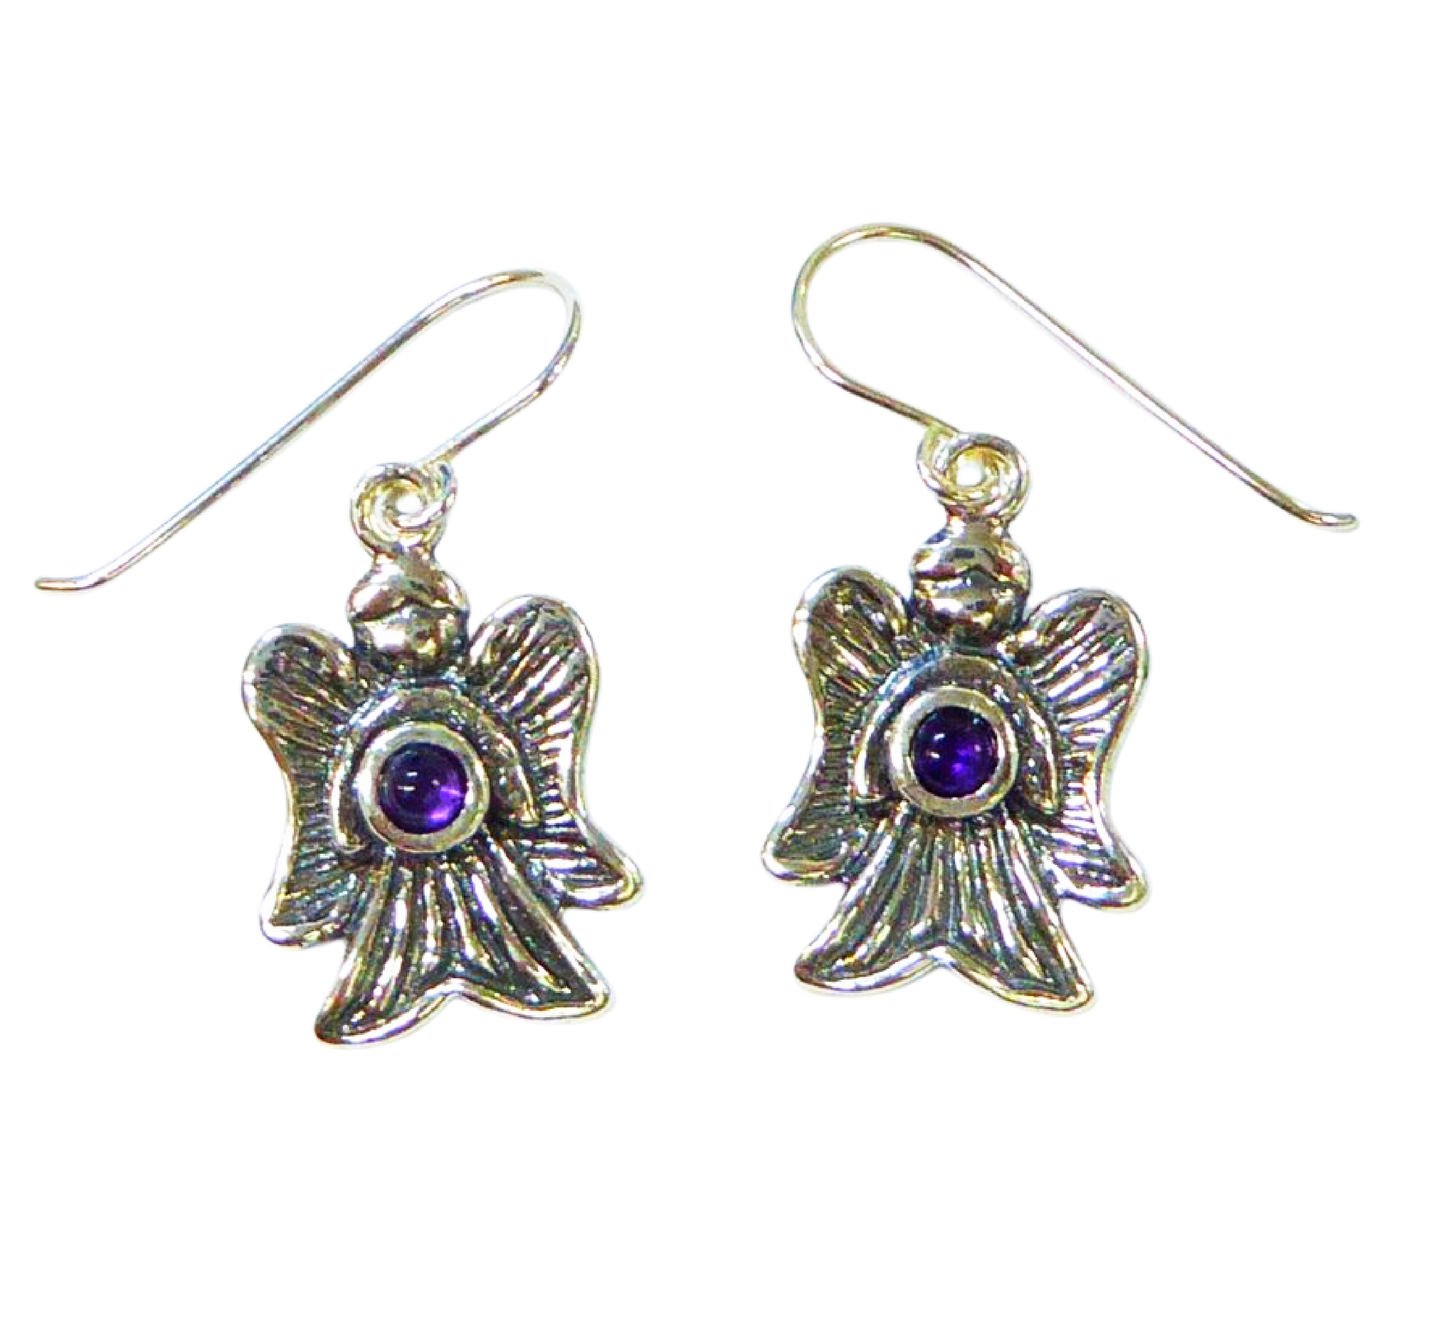 Bluenoemi Earrings silver Sterling Silver Earrings for Women. Angels Israeli Jewelry Earrings